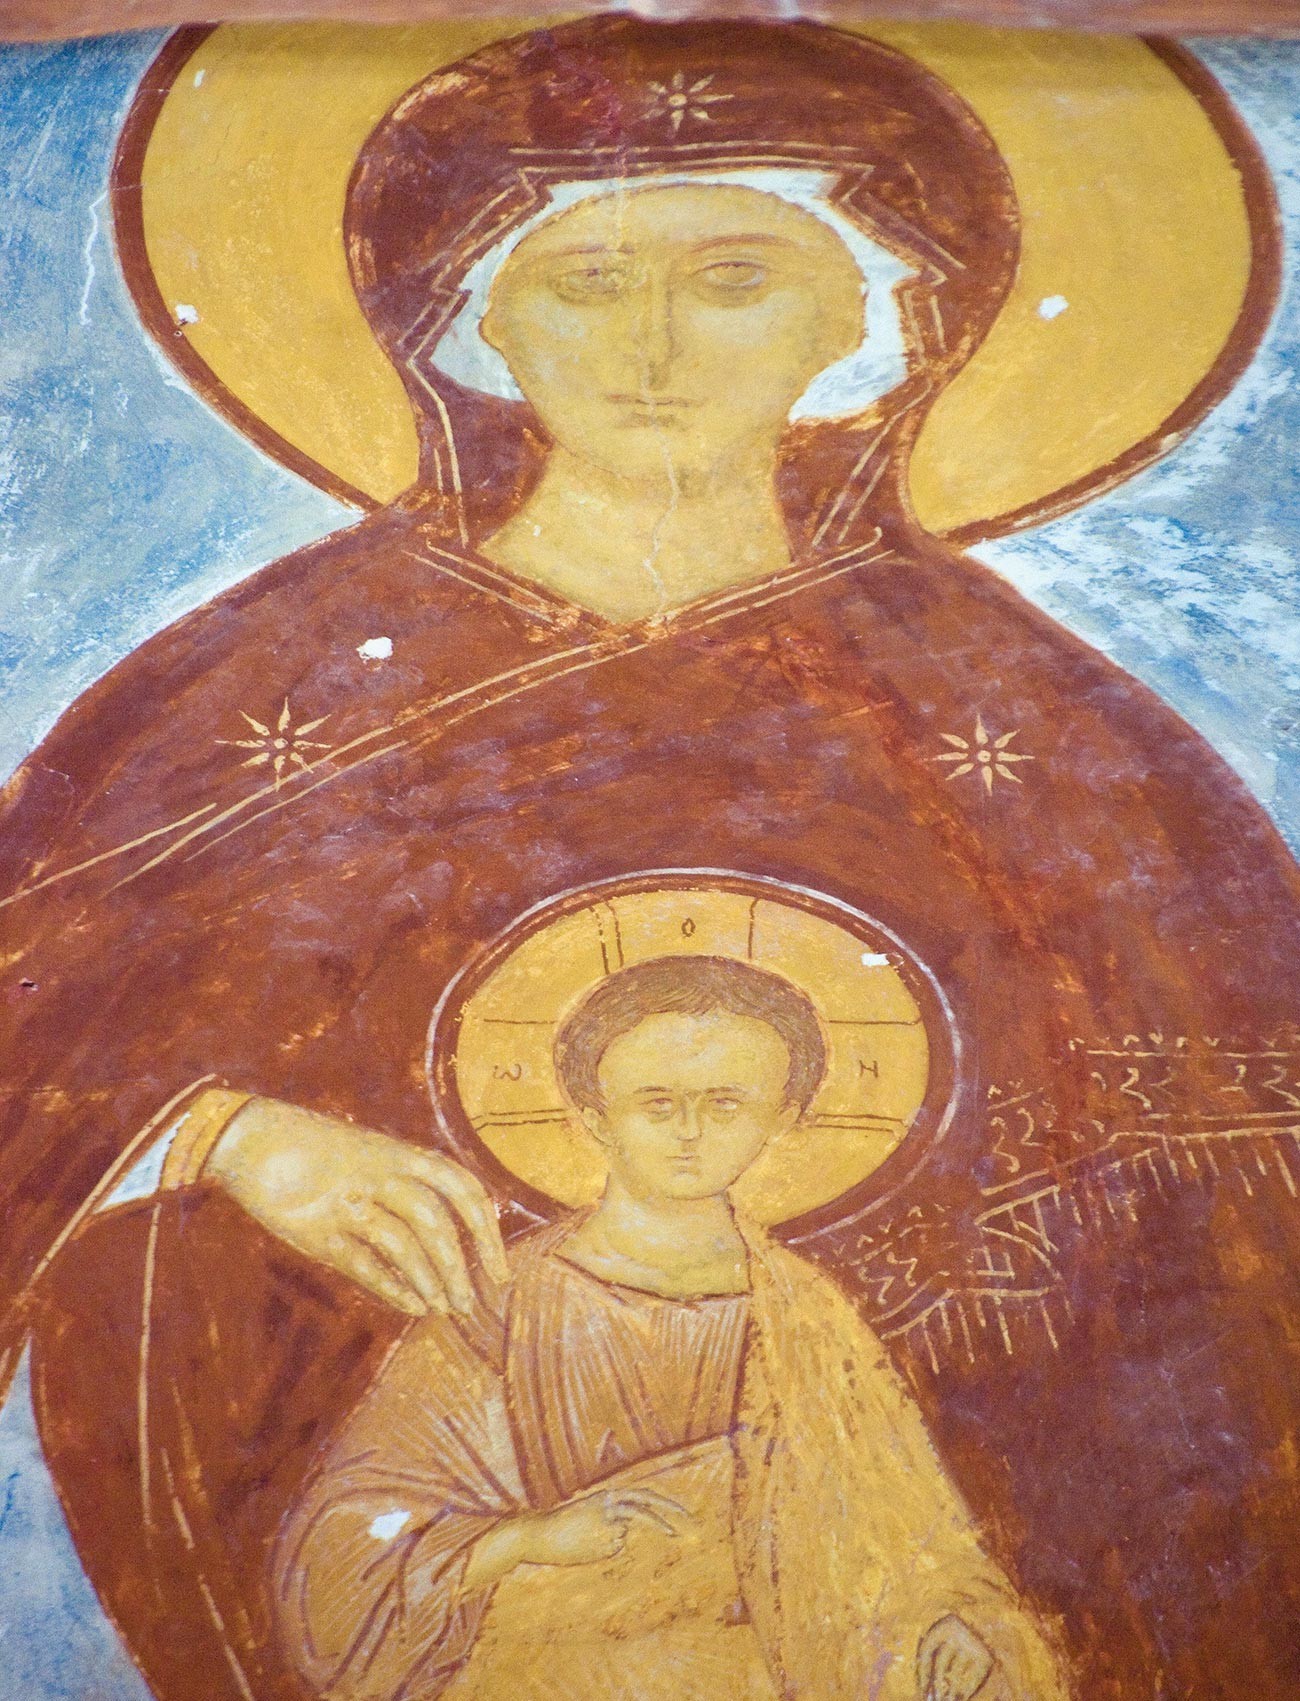 Catedral de la Natividad. Ábside central. Fresco de María entronizada con el Niño Jesús. 1 de junio de 2014.